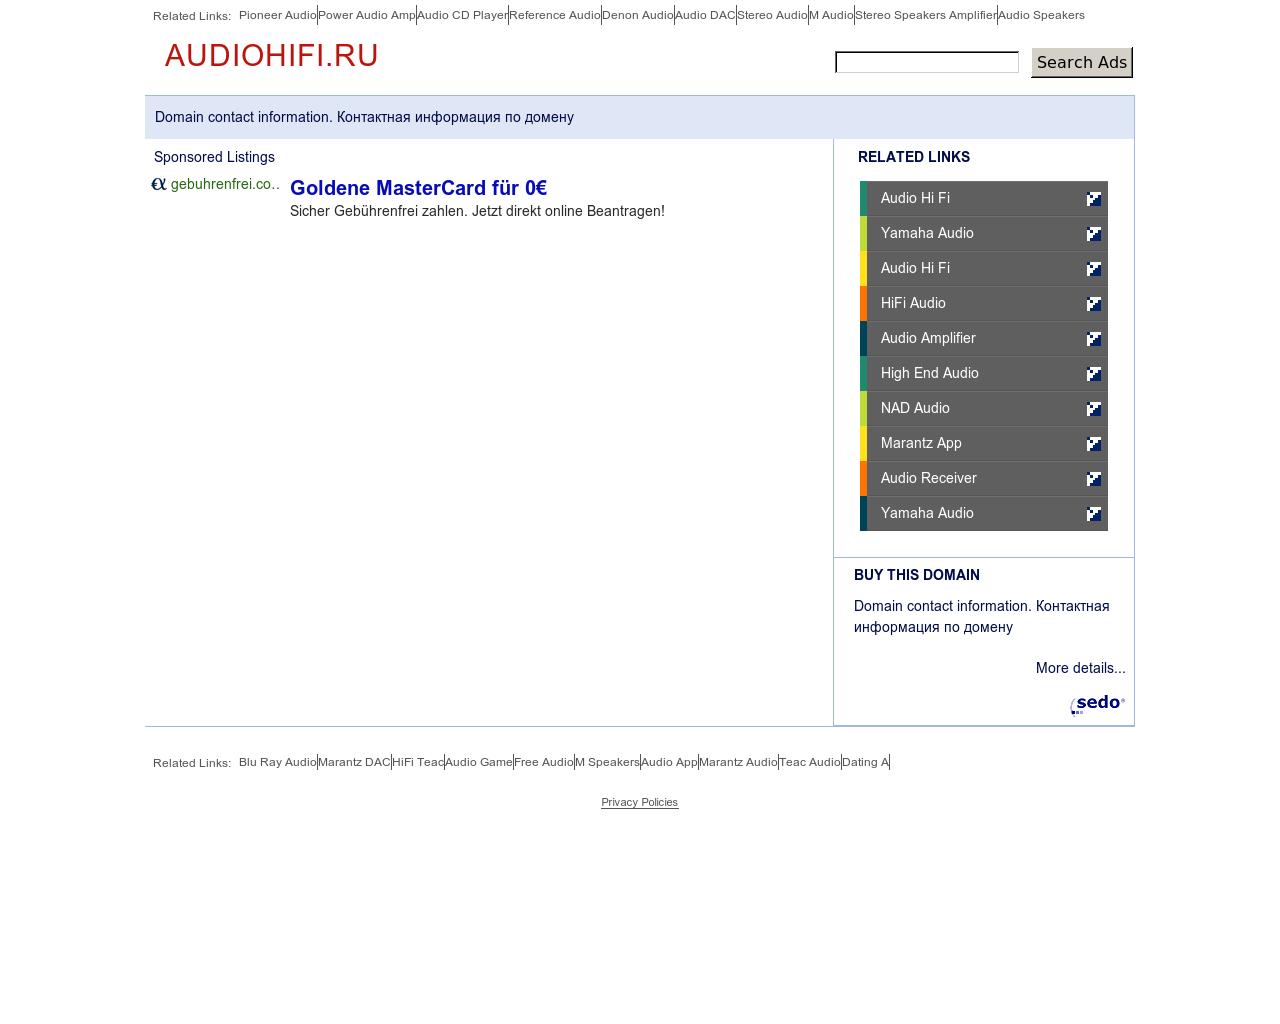 Изображение сайта audiohifi.ru в разрешении 1280x1024